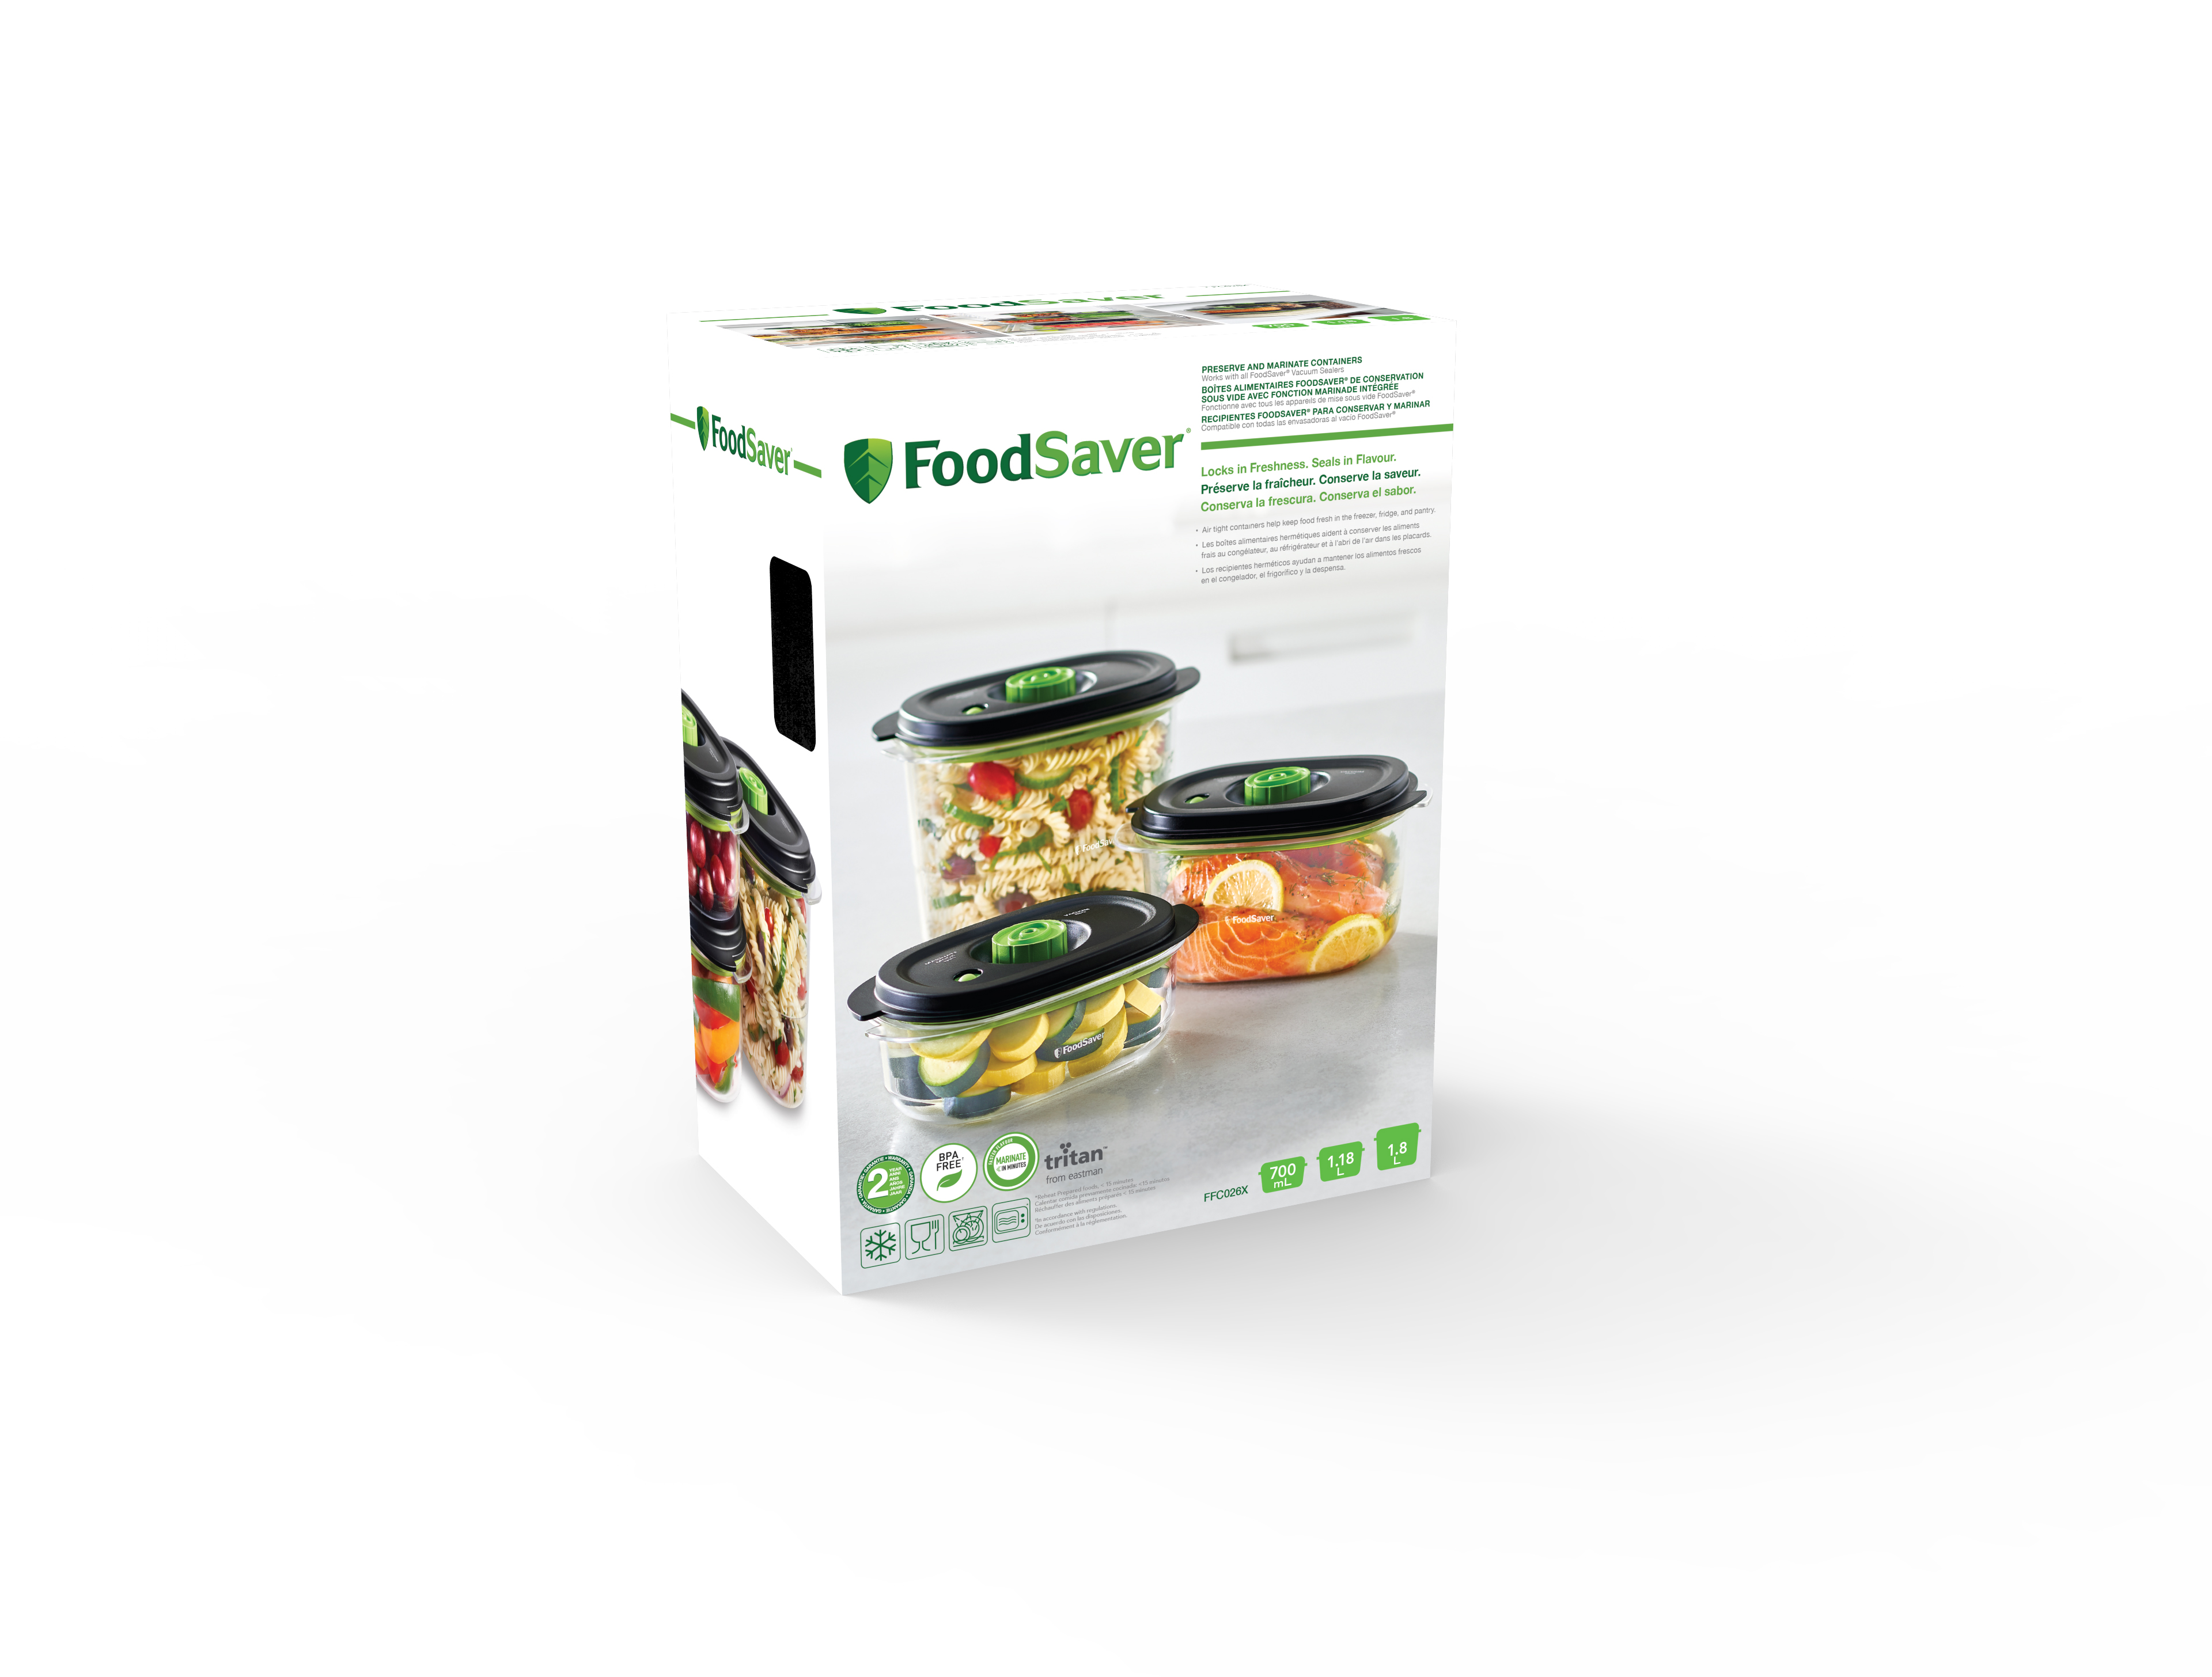 Envasadora al vacío FoodSaver VS0290X con sistema FoodSaver Everyday